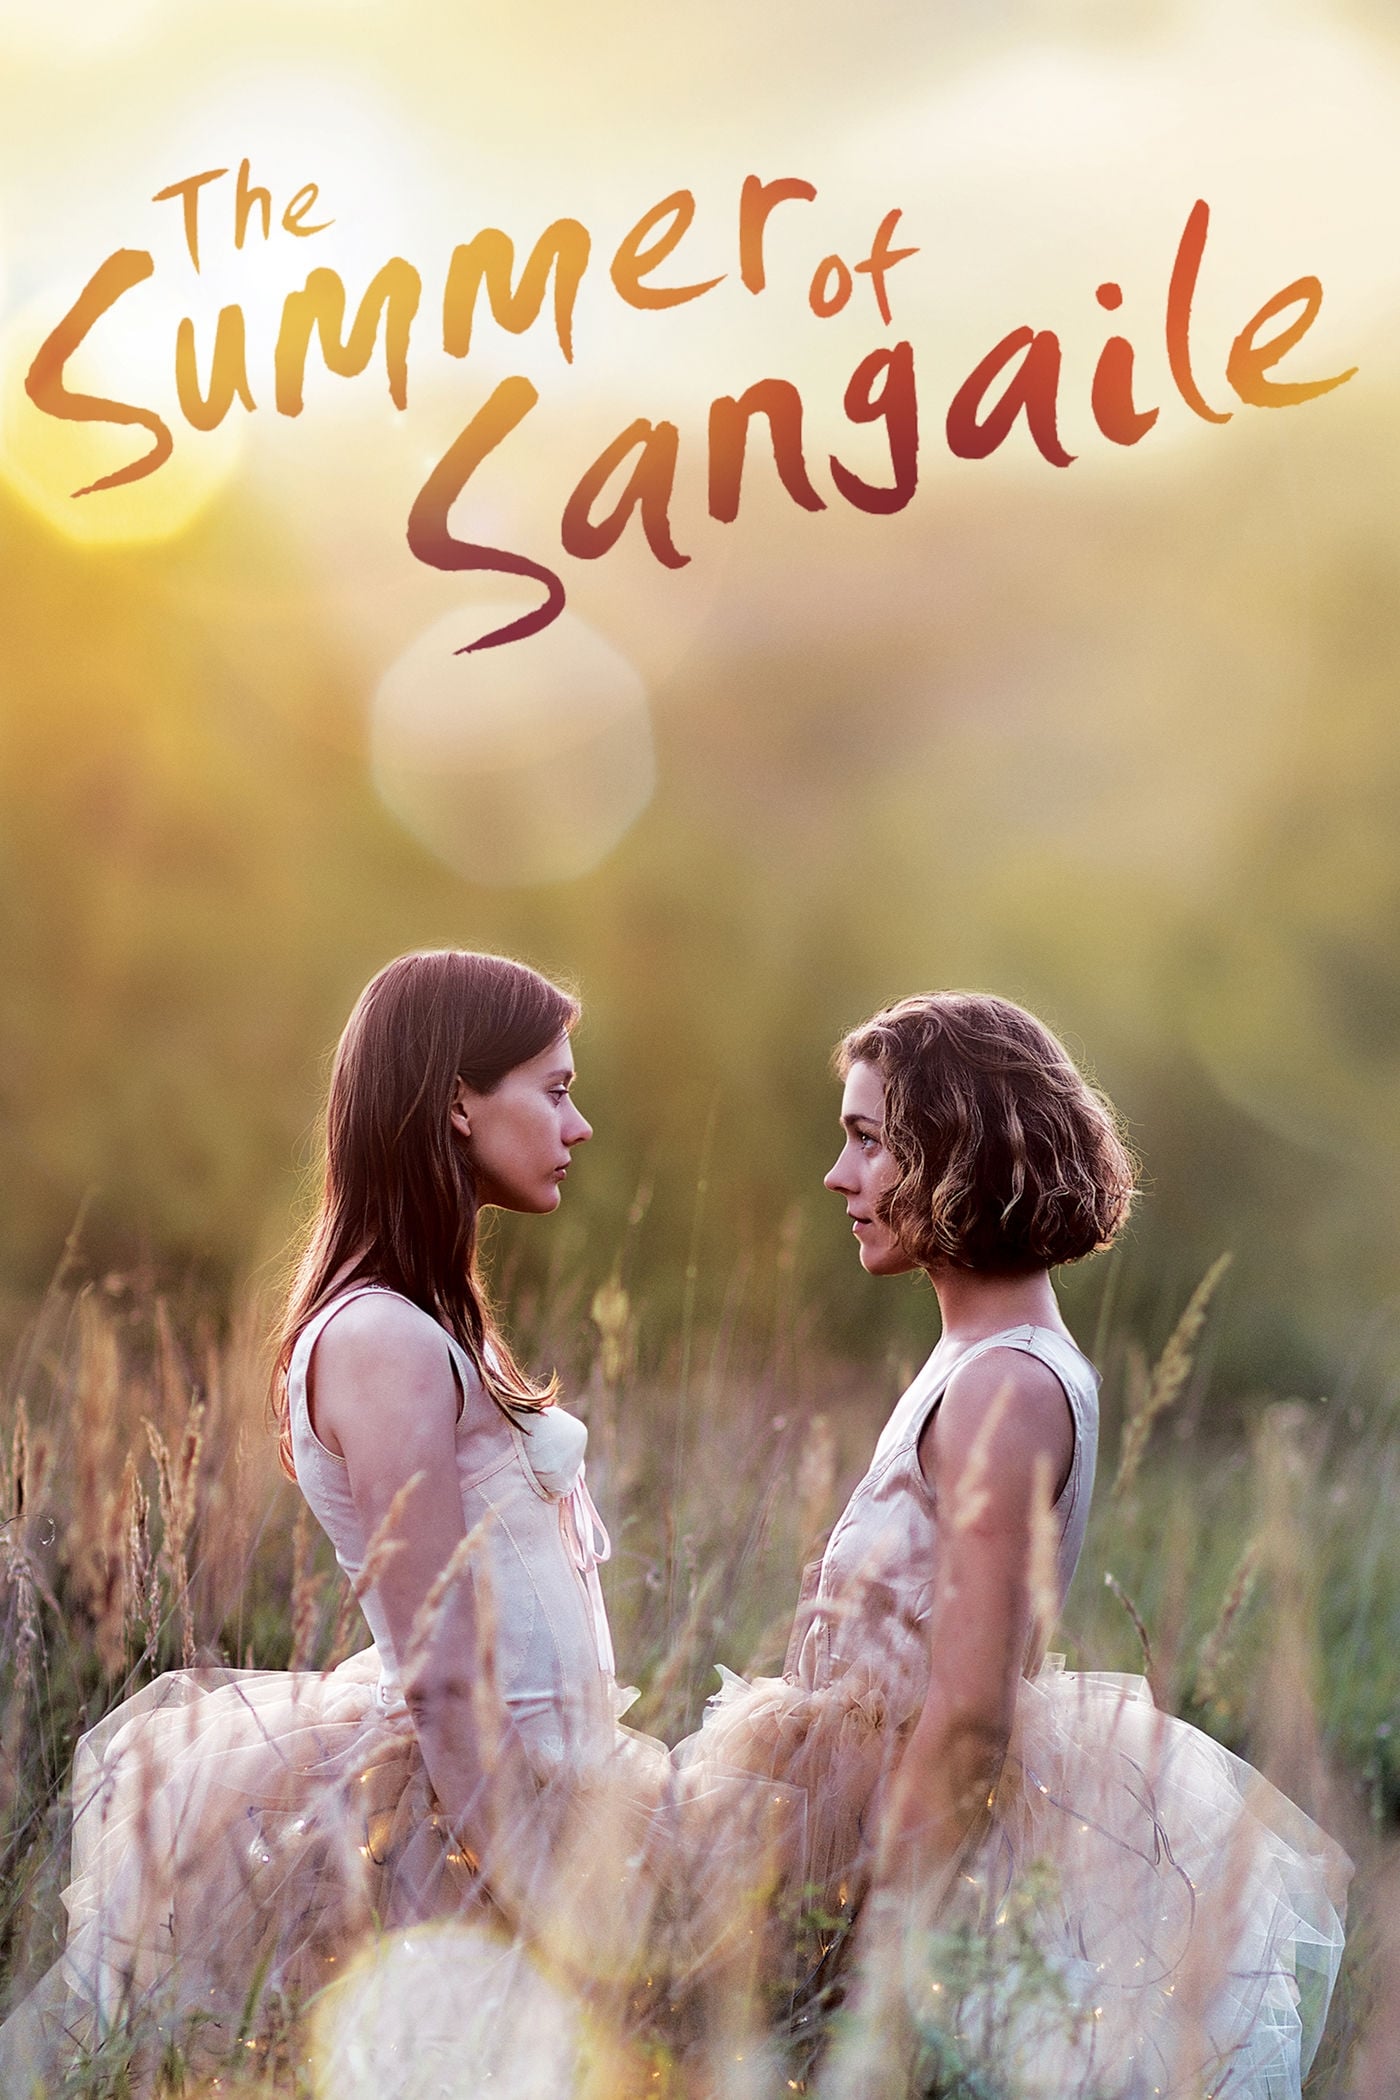 Der Sommer von Sangailé